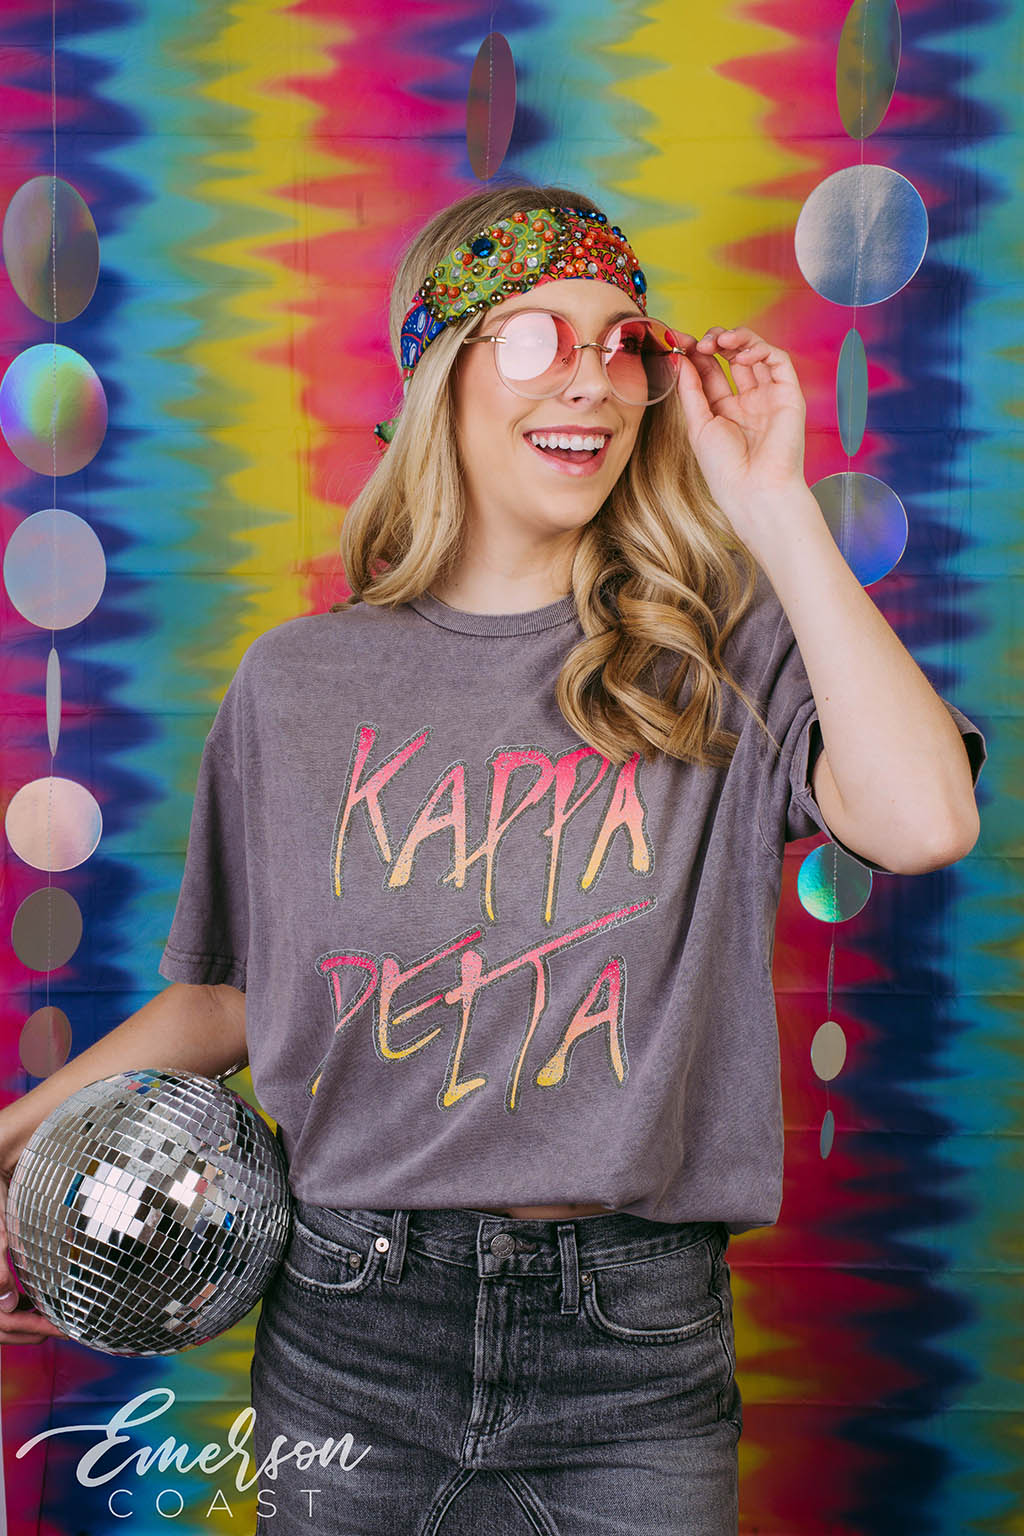 Kappa Delta Graffiti Bid Day T-Shirt